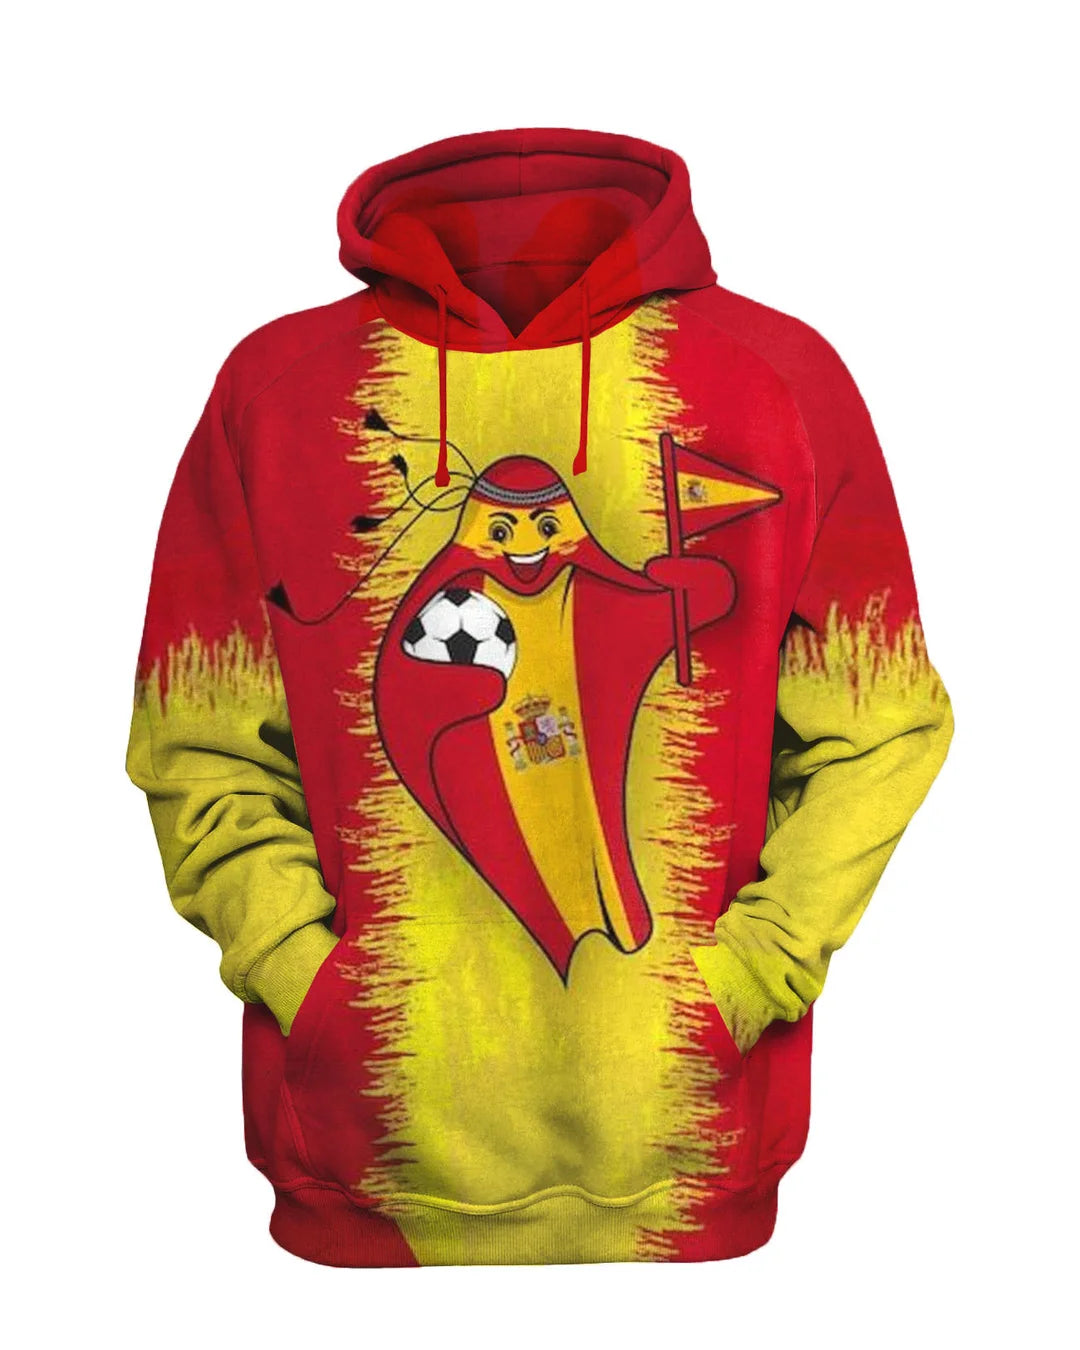 Spanish Mascot Printed Sweatshirt Set - DUVAL